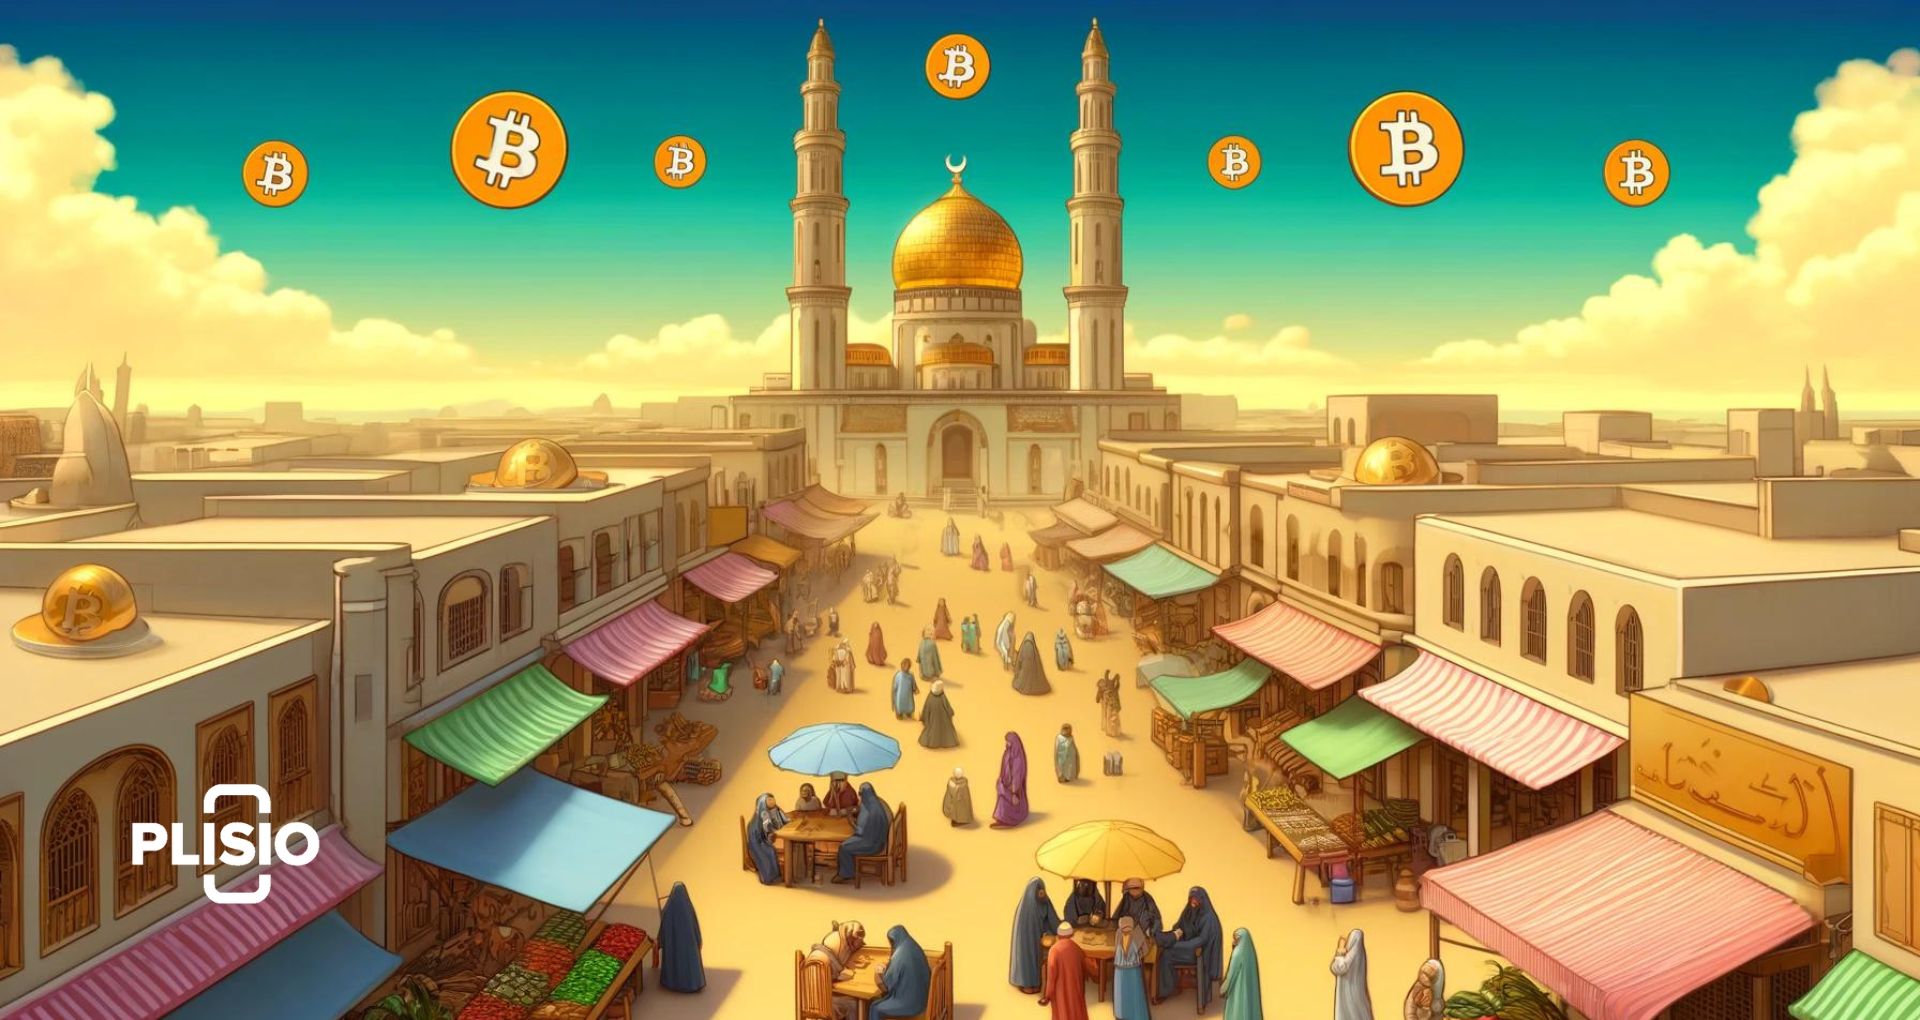 Ist Bitcoin halal? Welchen Stellenwert haben Kryptowährungen in der muslimischen Welt?